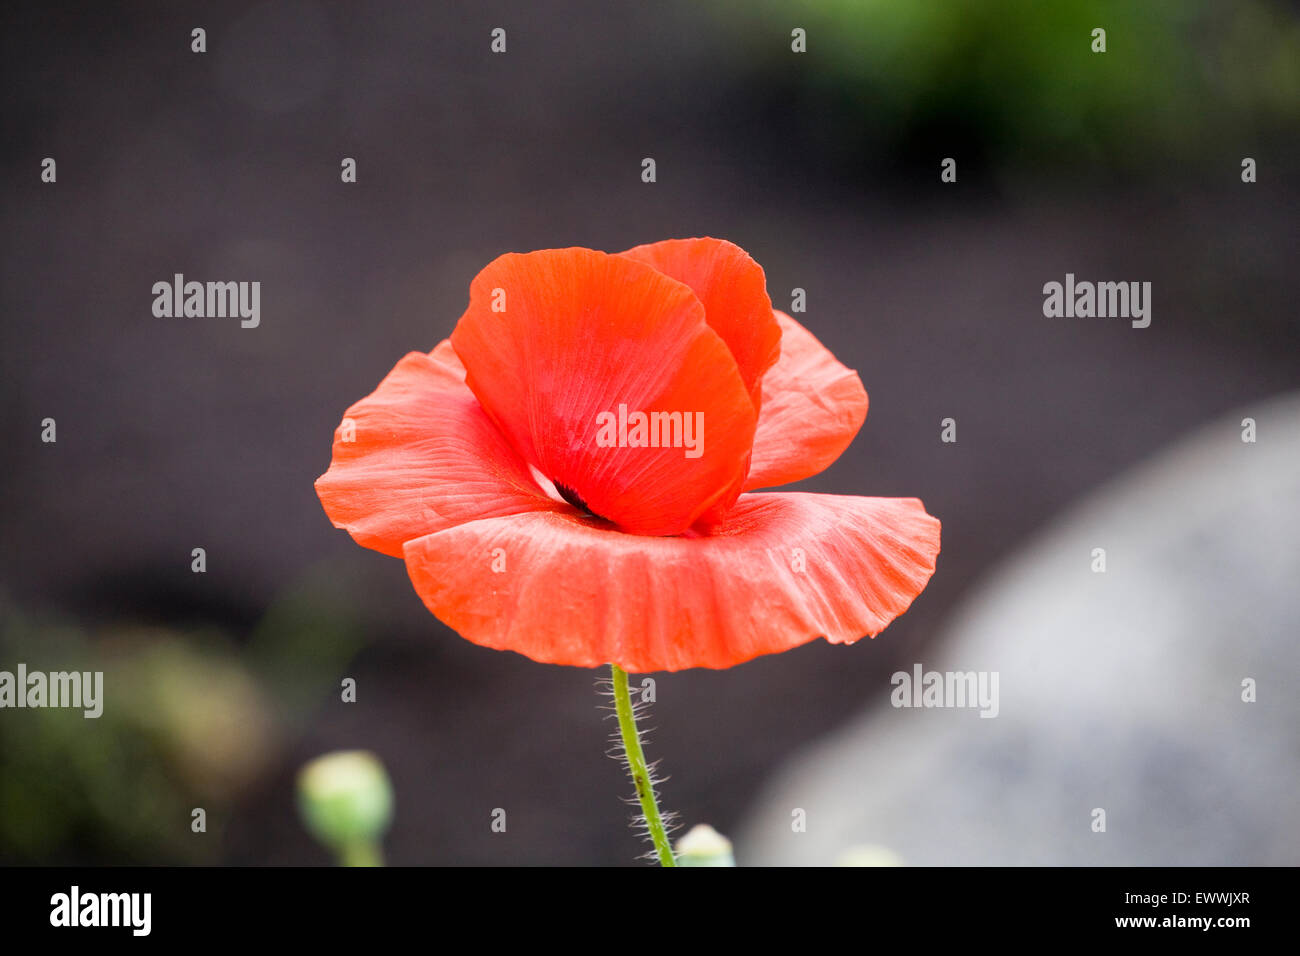 Portrait of a poppy growing in a field Stock Photo